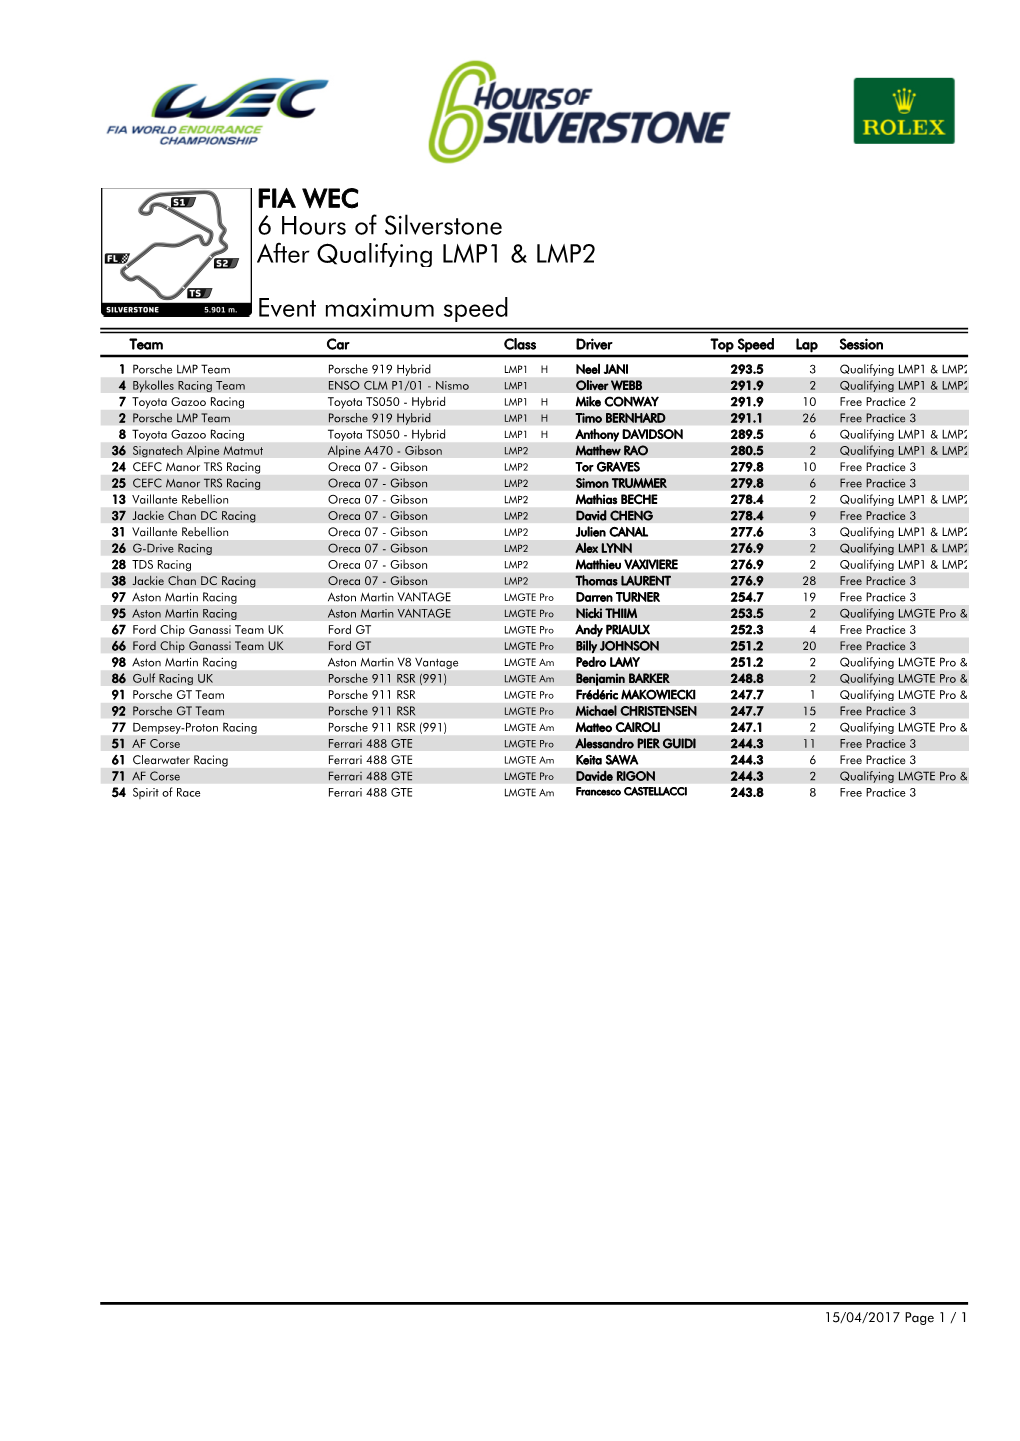 Event Maximum Speed Qualifying LMP1 & LMP2 6 Hours Of